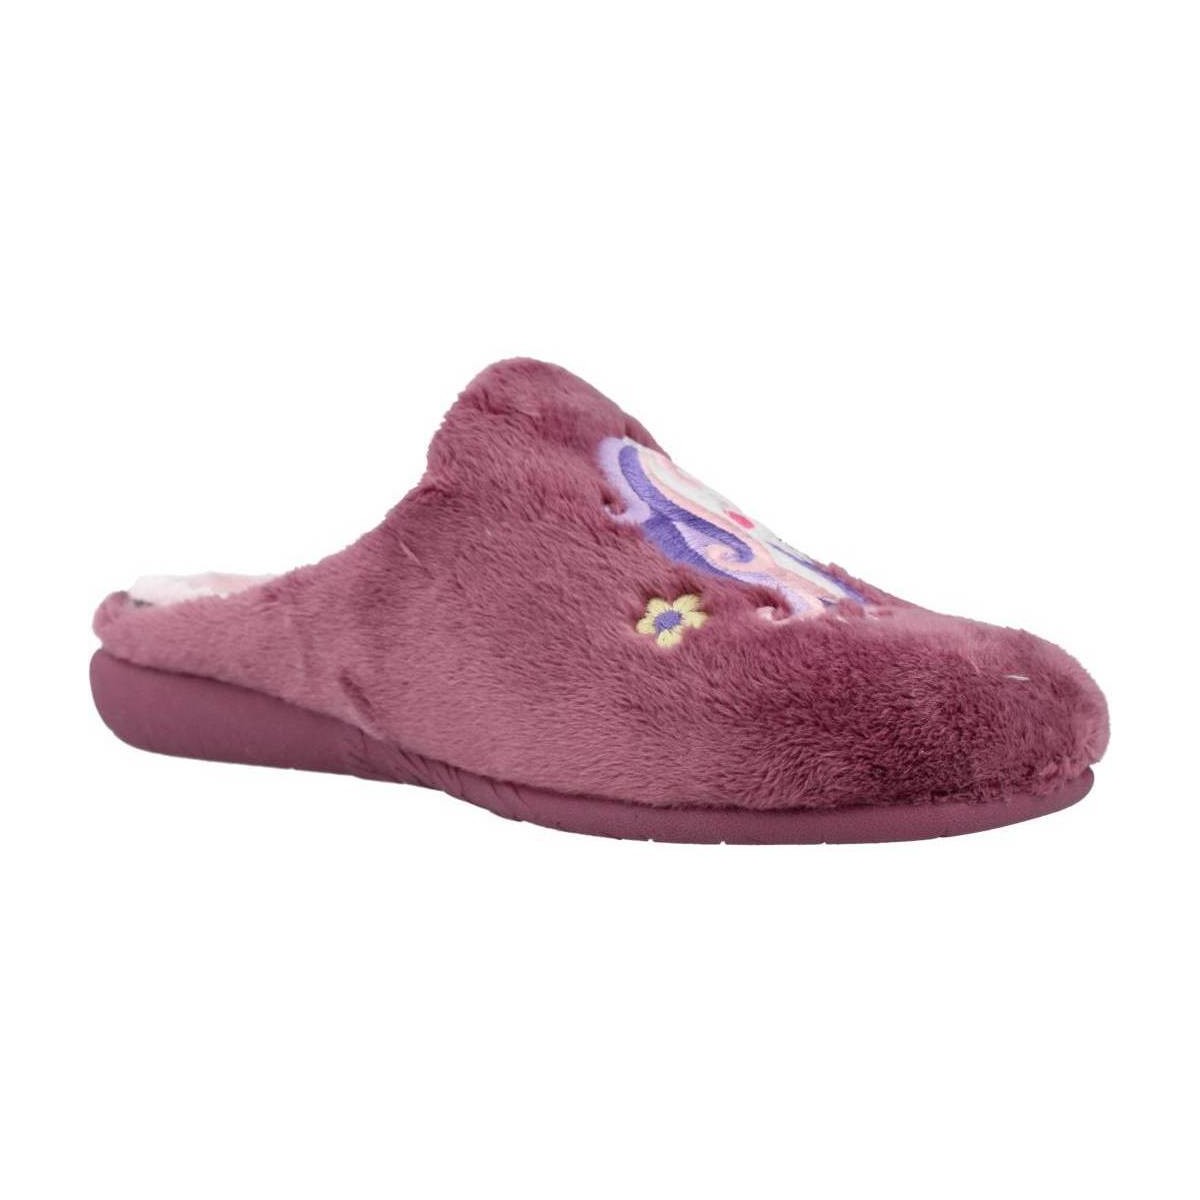 Cipők Lány Mamuszok Vulladi 5219 123 Rózsaszín